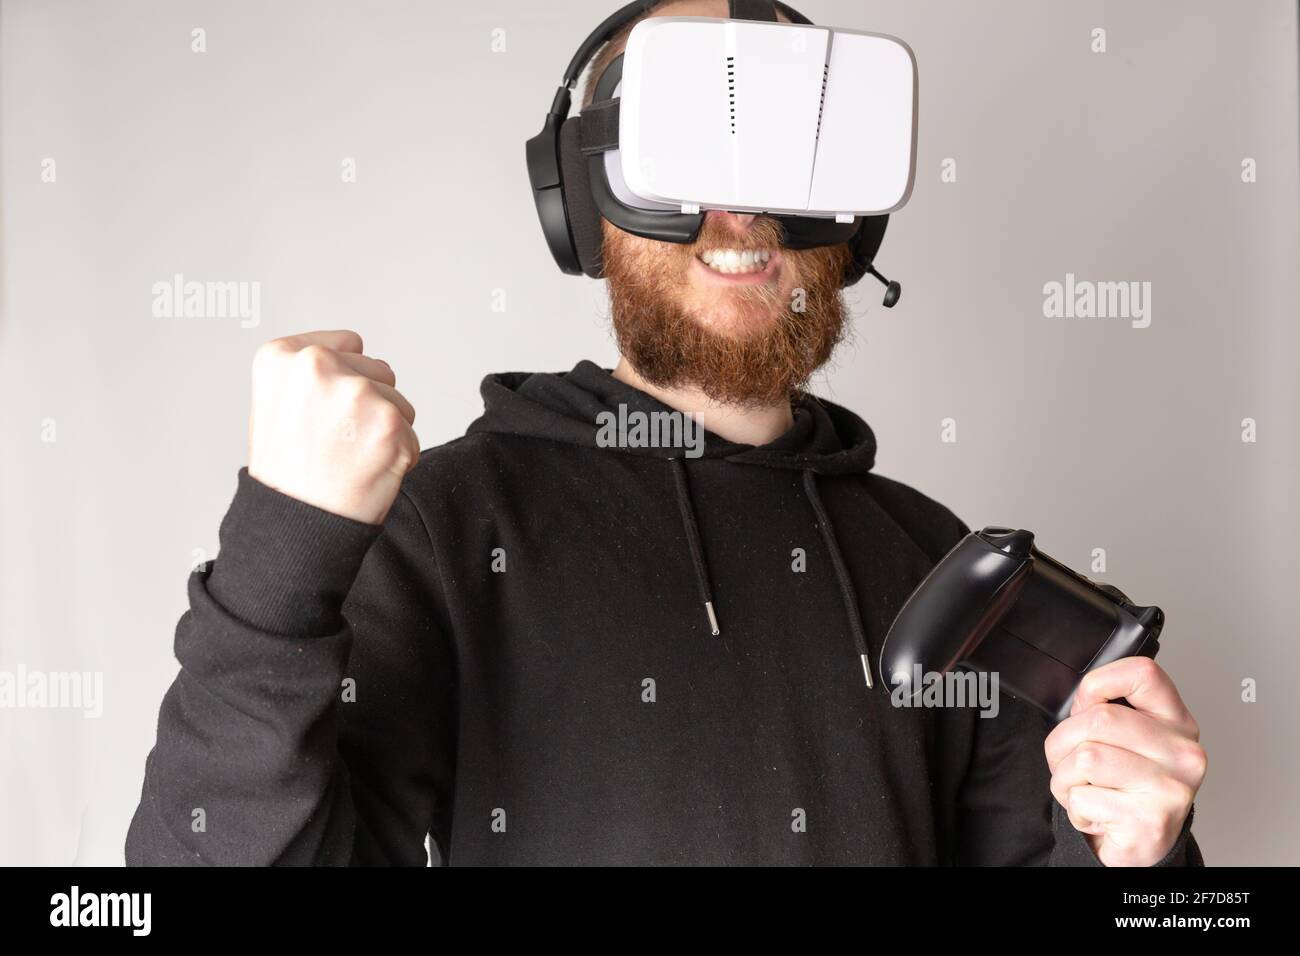 Un hombre desconocido que lleva un auricular VR y experimenta la realidad virtual. VR, realidad virtual, juegos, concepto de deportes electrónicos Foto de stock